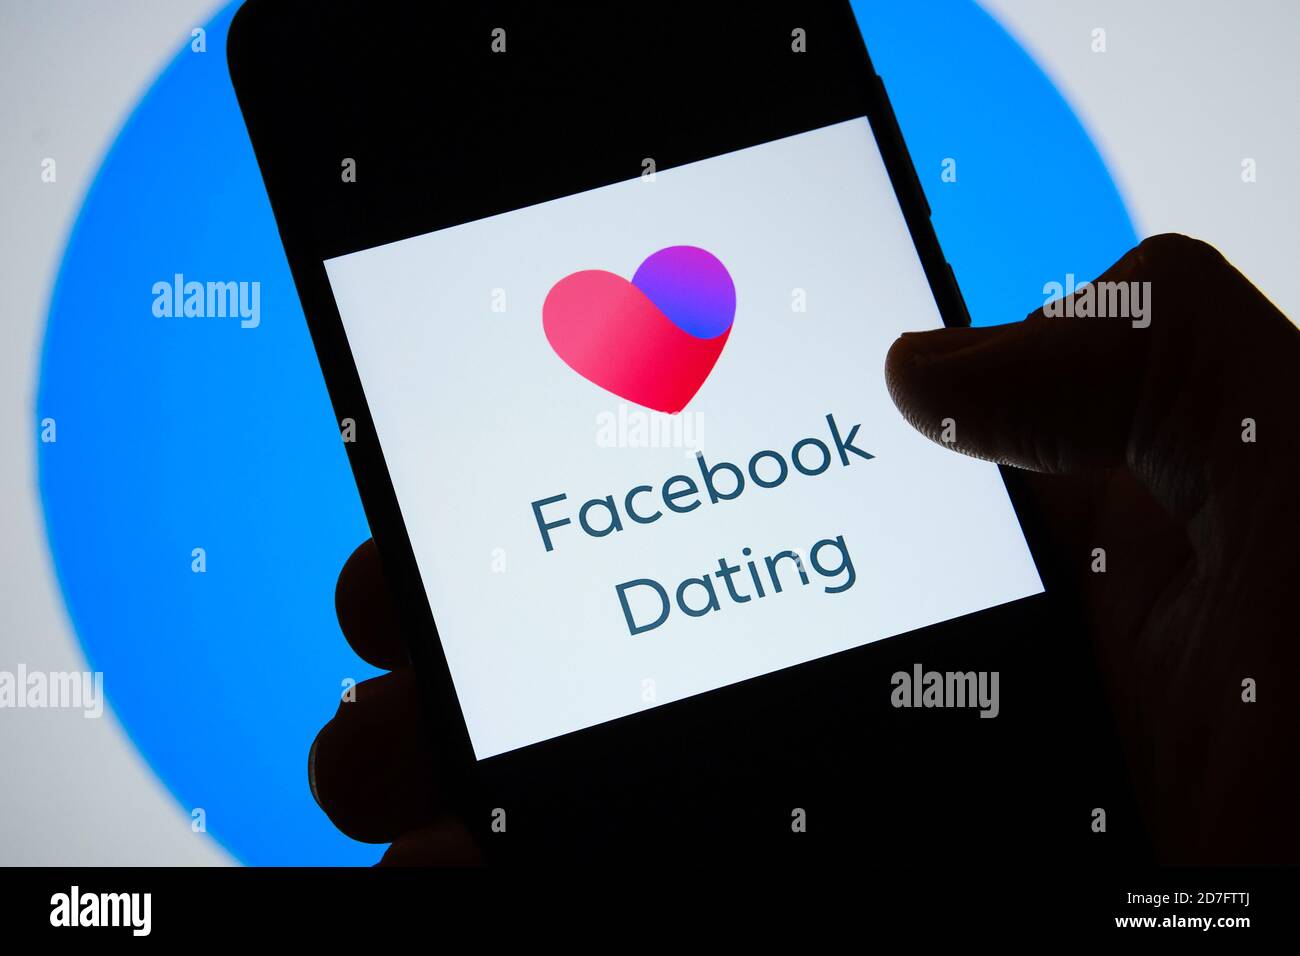 Manchester / Royaume-Uni - 21 octobre 2020: Facebook Dating App logo vu sur l'écran de smartphone tenir dans une main. Service de rencontres récemment lancé Banque D'Images